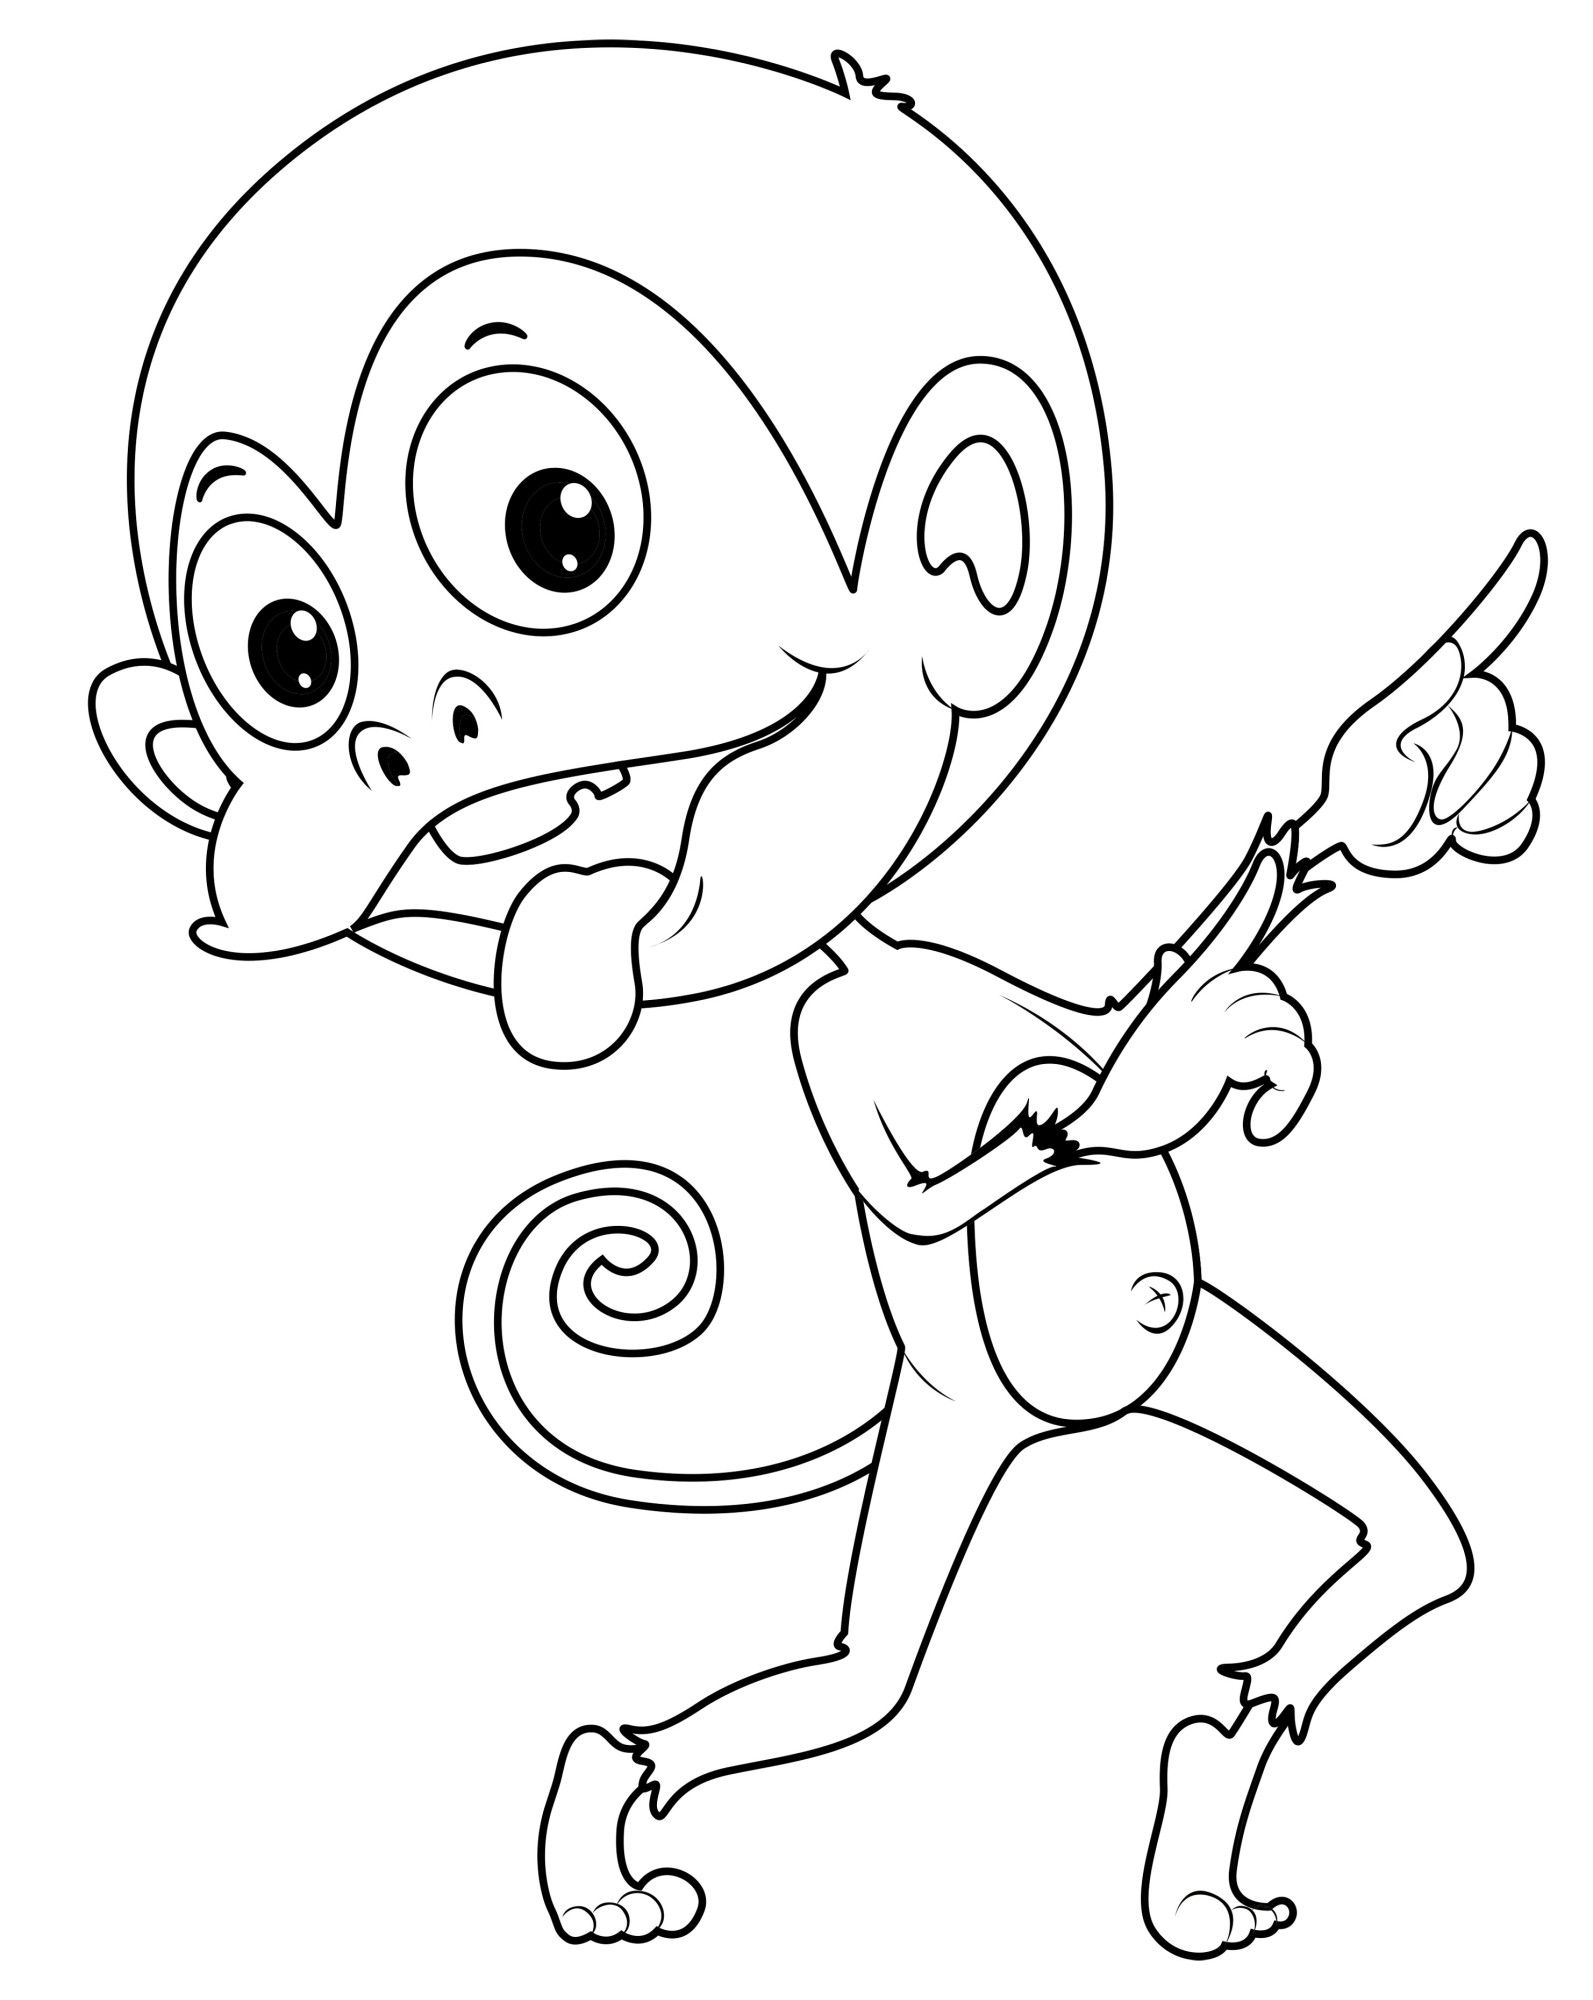 Раскраска для детей: обезьянка дурачится